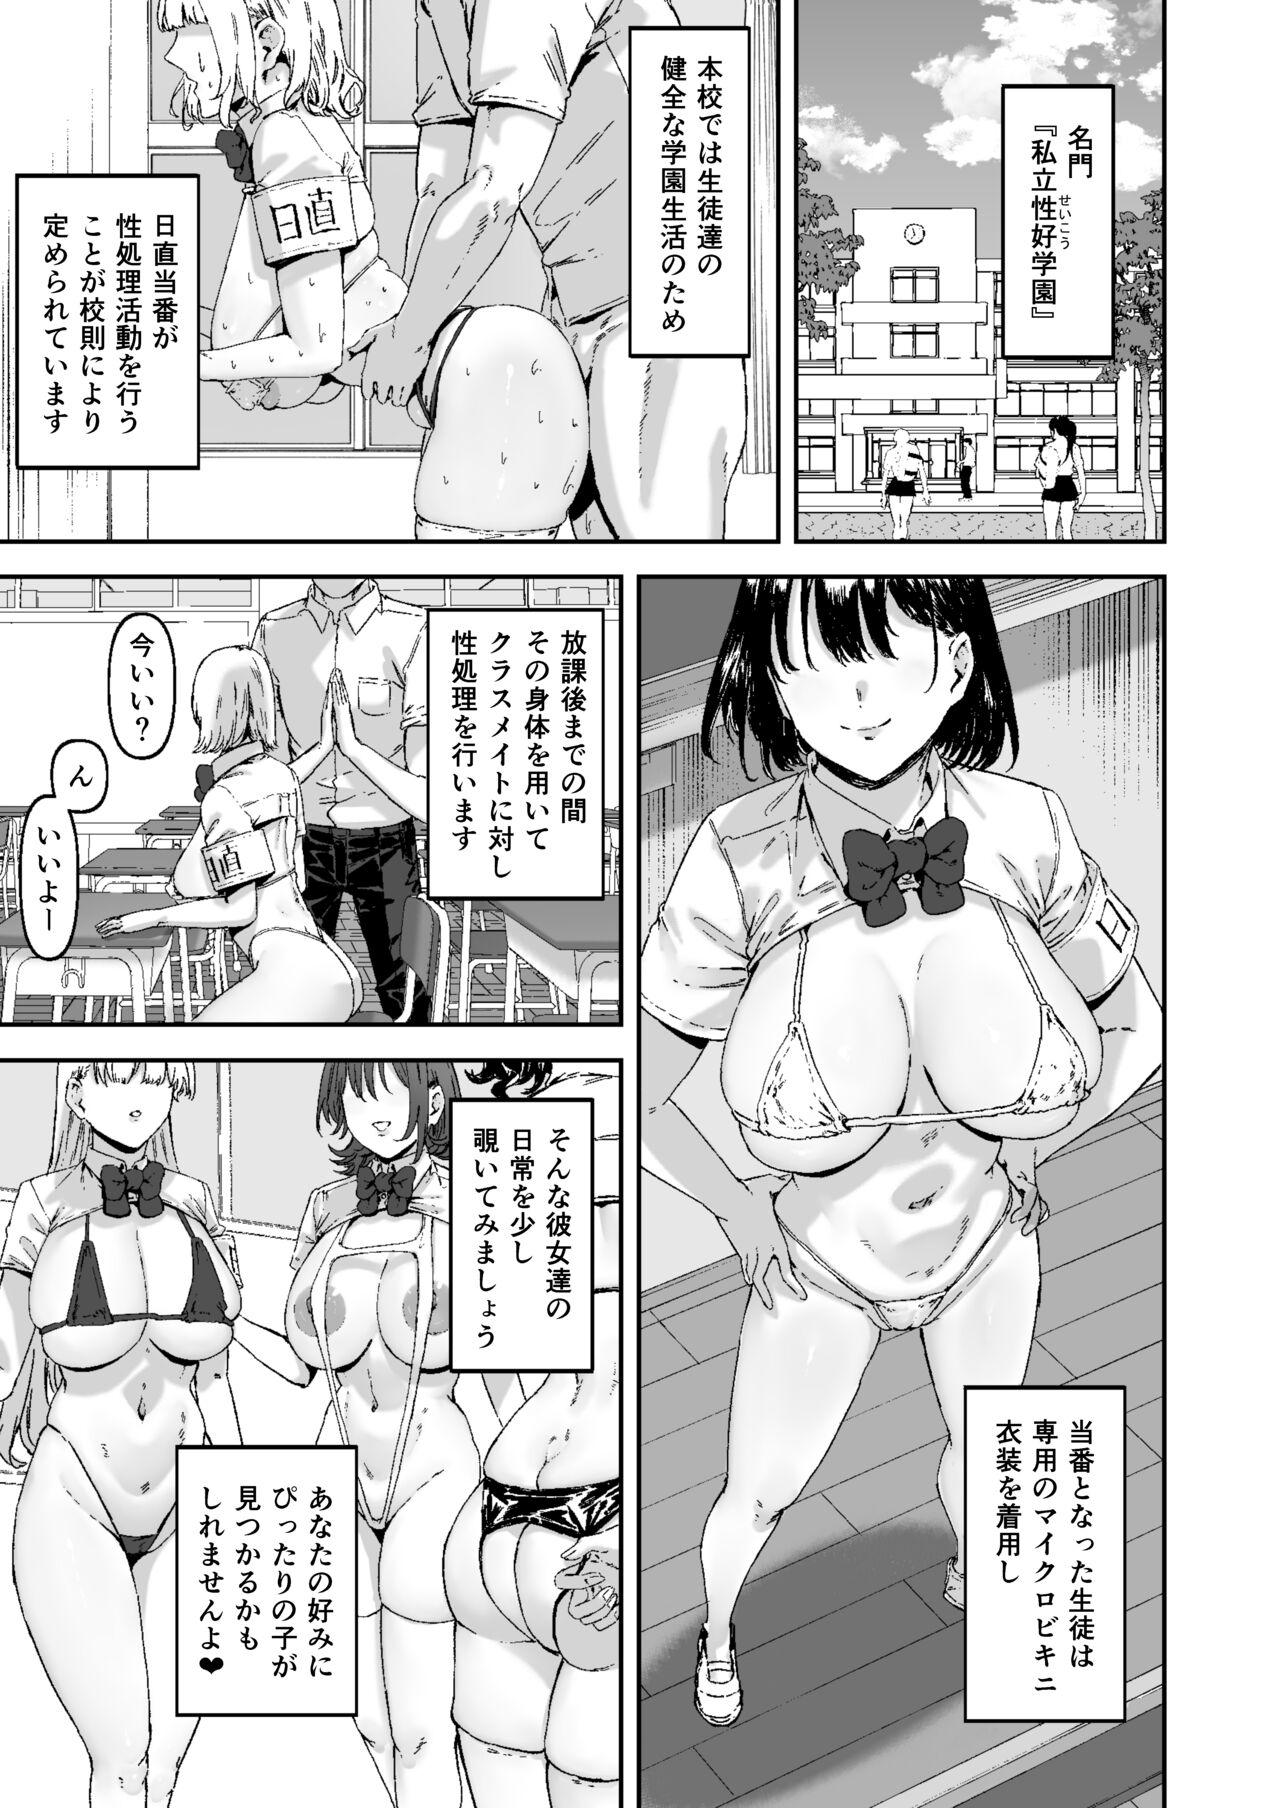 Mature Nicchoku wa Micro Bikini de - Original Blows - Page 2